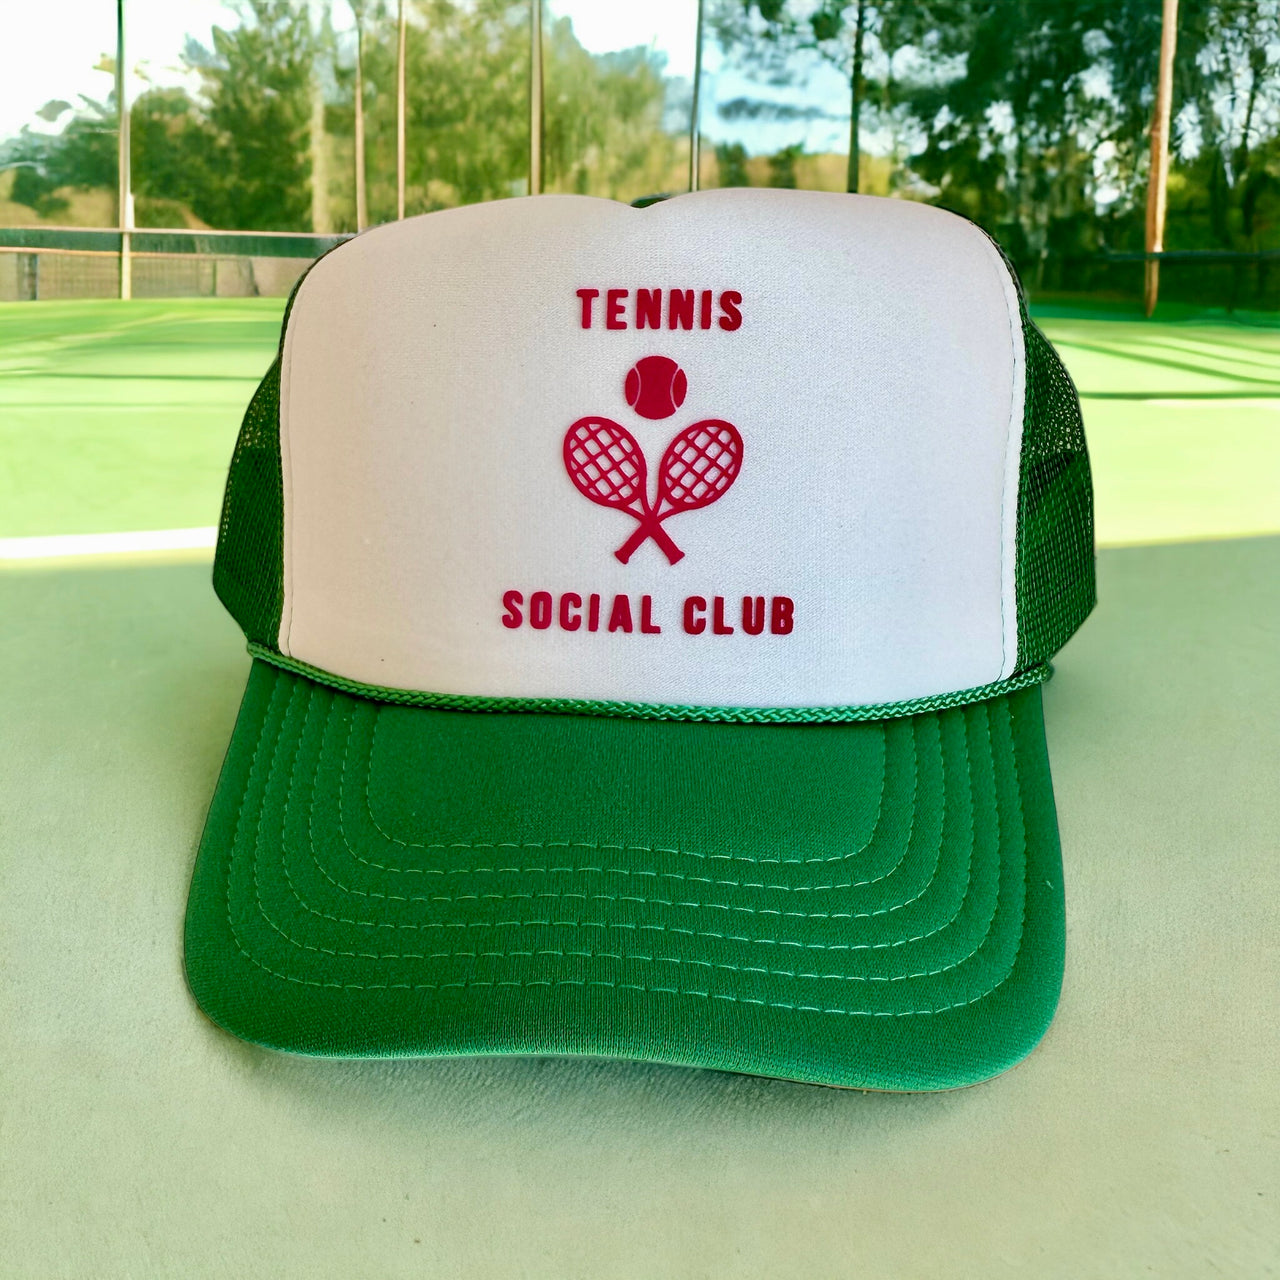 Tennis Social Club Trucker - White/Green